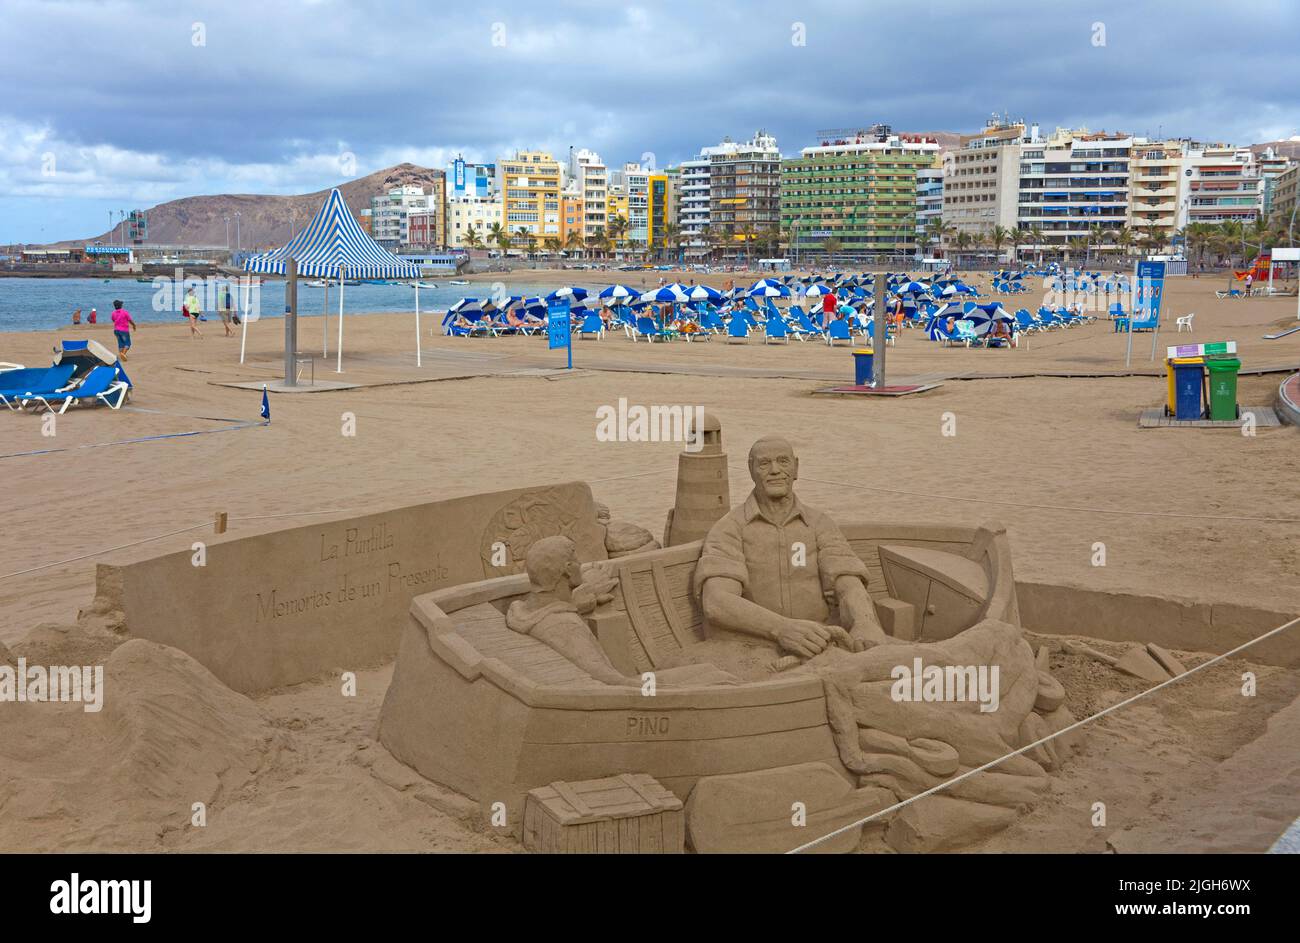 Sandkunst, Fischer in einem Fischerboot aus Sand, Playa de las Canteras, Stadtstrand von Las Palmas, Grand Canary, Kanarische Inseln, Spanien, Europa Stockfoto